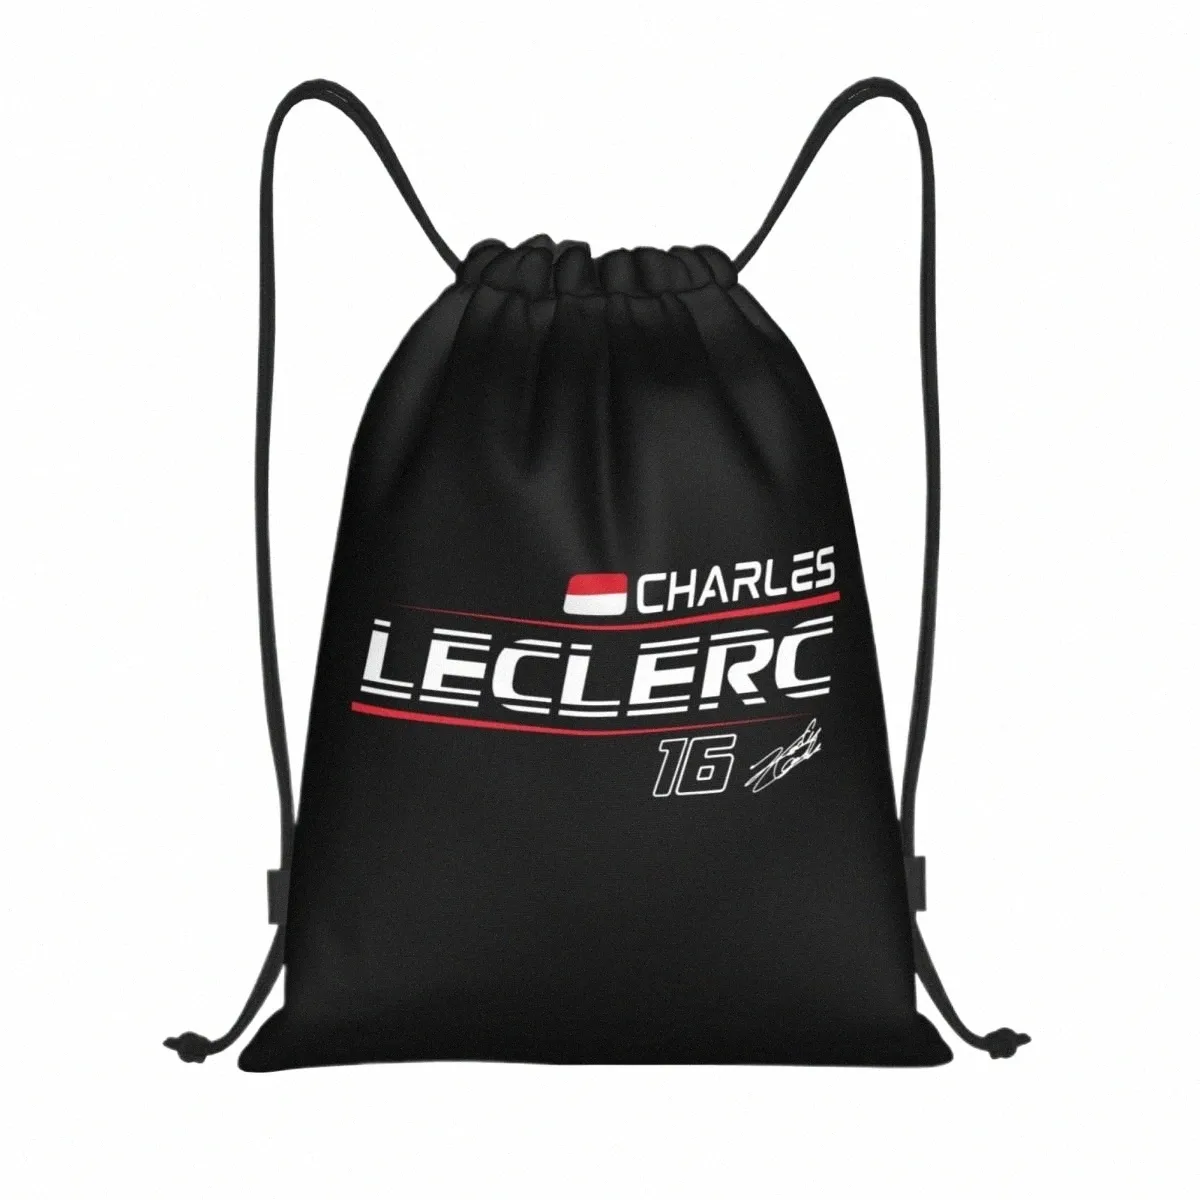 Personnalisé Charles Leclerc 16 Sport Car Race Sac à cordon pour magasin Yoga Sacs à dos Femmes Hommes Sport Gym Sackpack t61U #